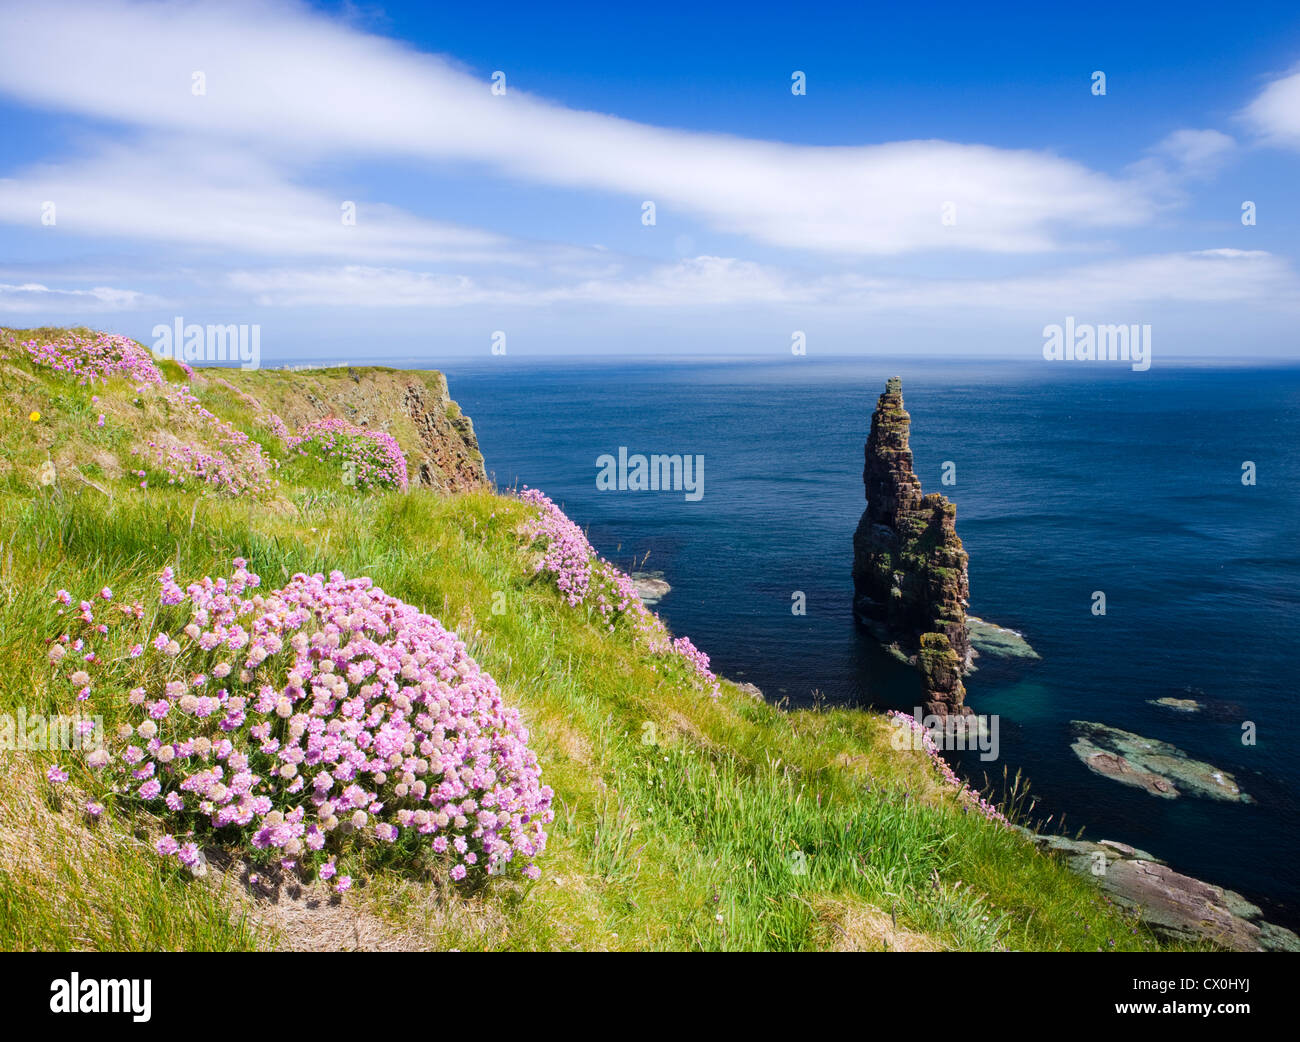 Stapel von Duncansby, in der Nähe von John o' Groats, Highland, Schottland, UK. Sparsamkeit im Vordergrund. Stockfoto